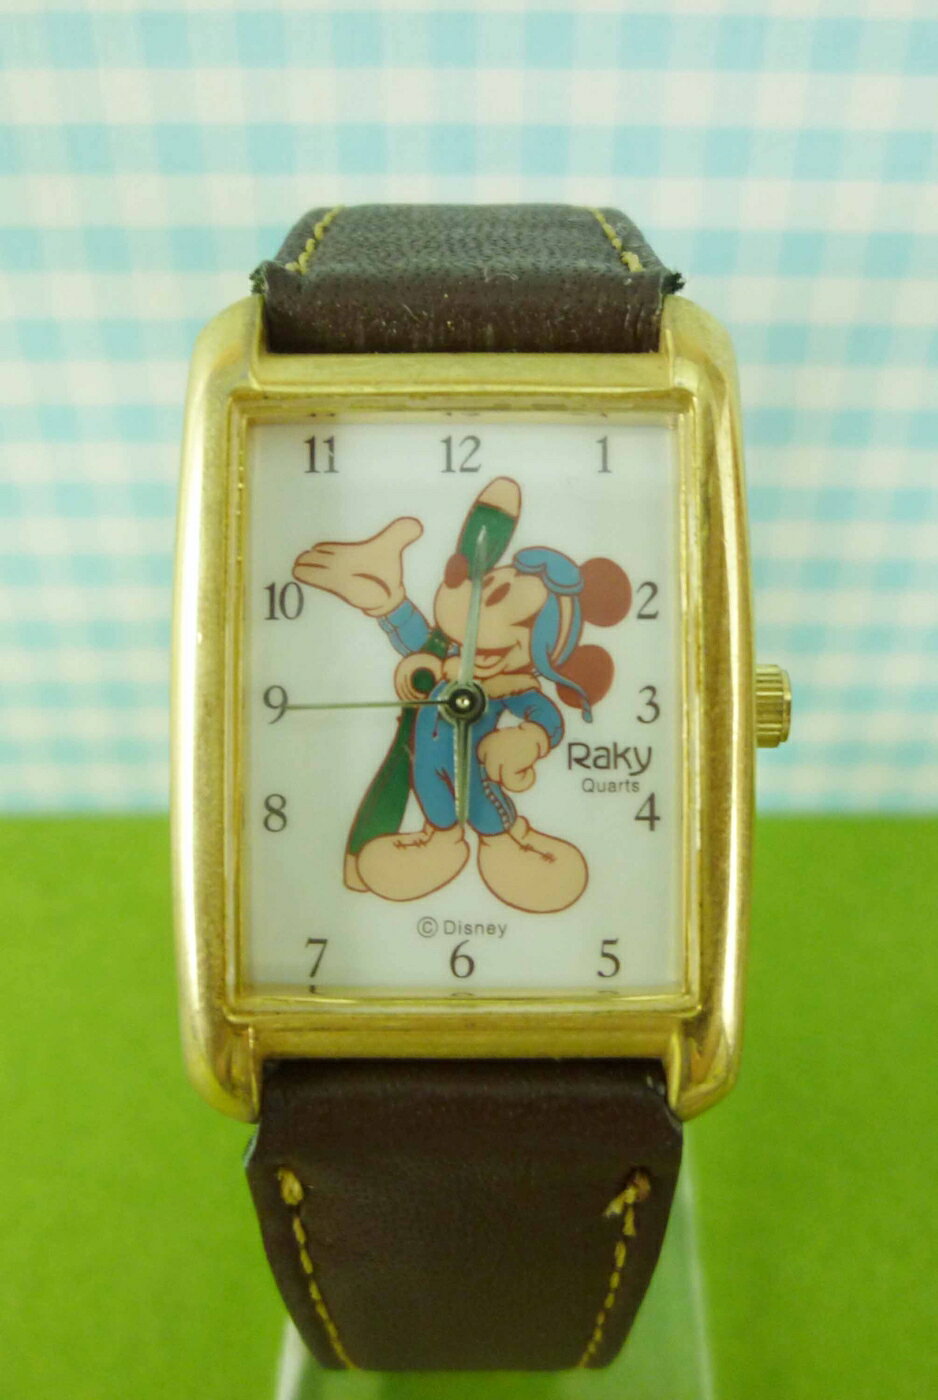 【震撼精品百貨】米奇/米妮 Micky Mouse 手錶-米奇全身RAKY圖案-咖啡色 震撼日式精品百貨